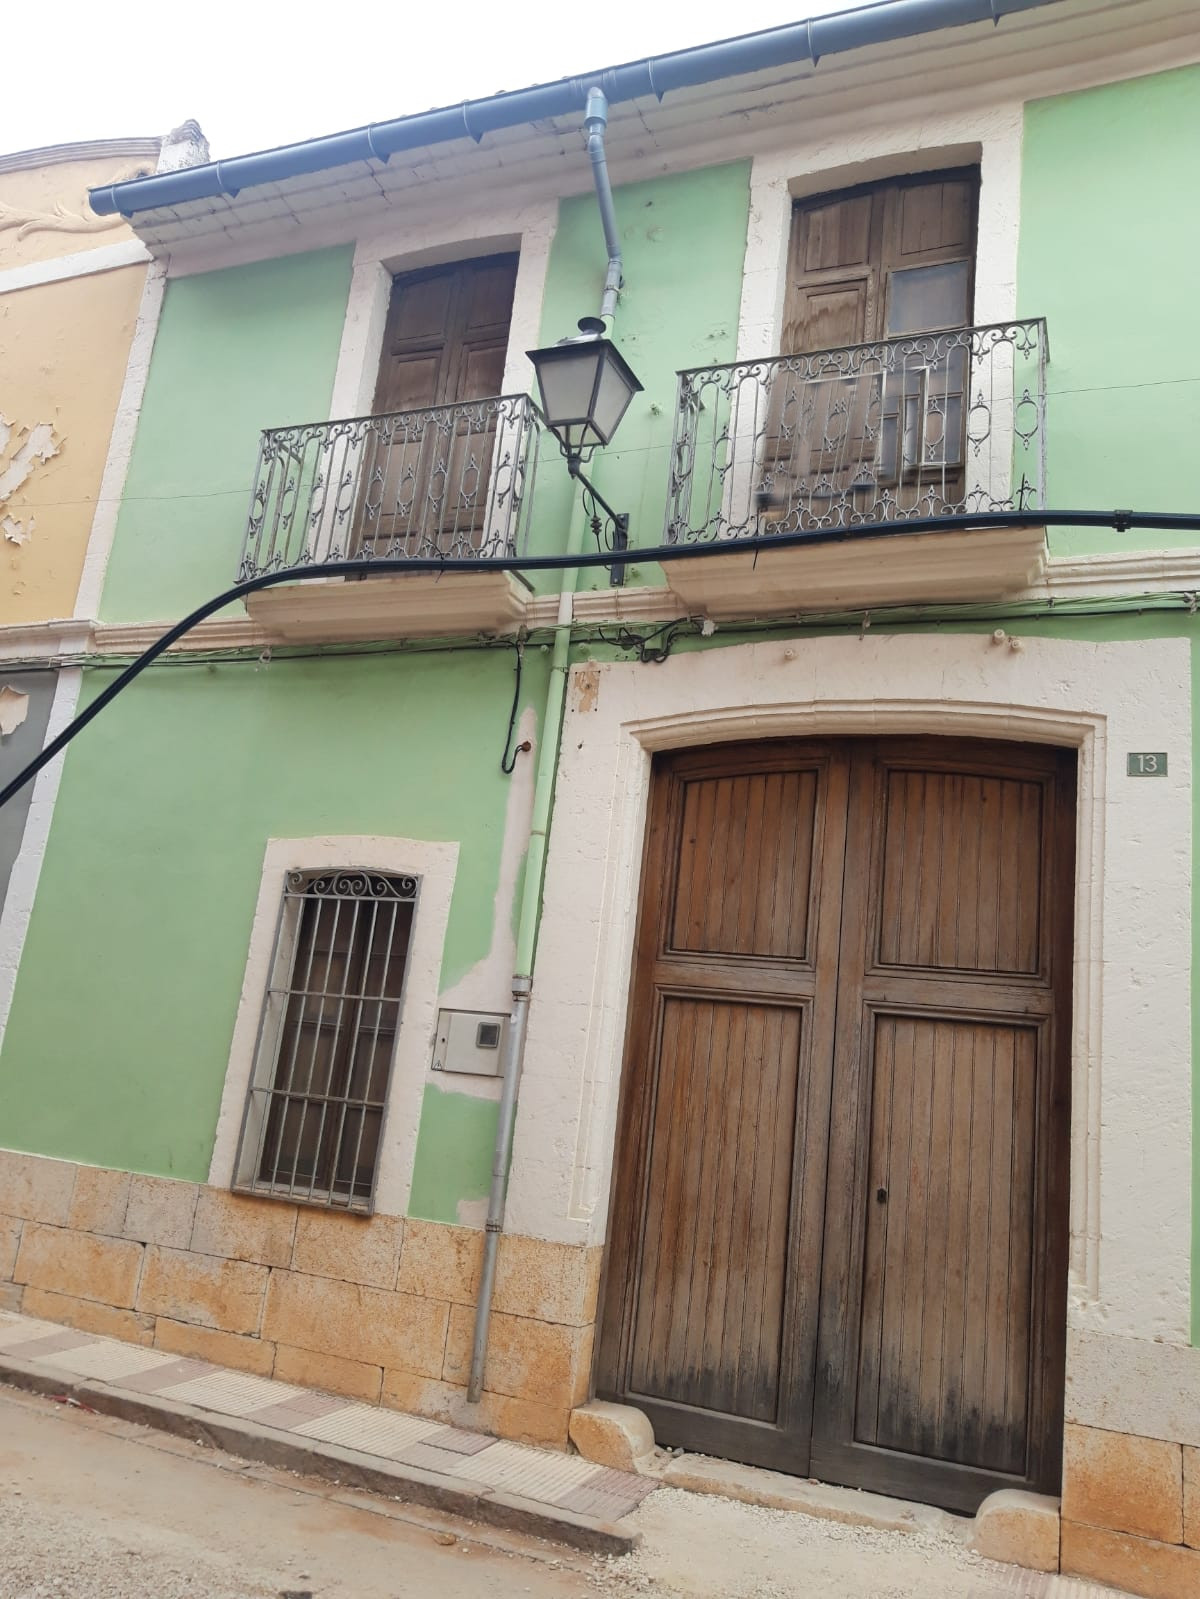 Privado: Se vende casa de pueblo a reformar en Gata de Gorgos